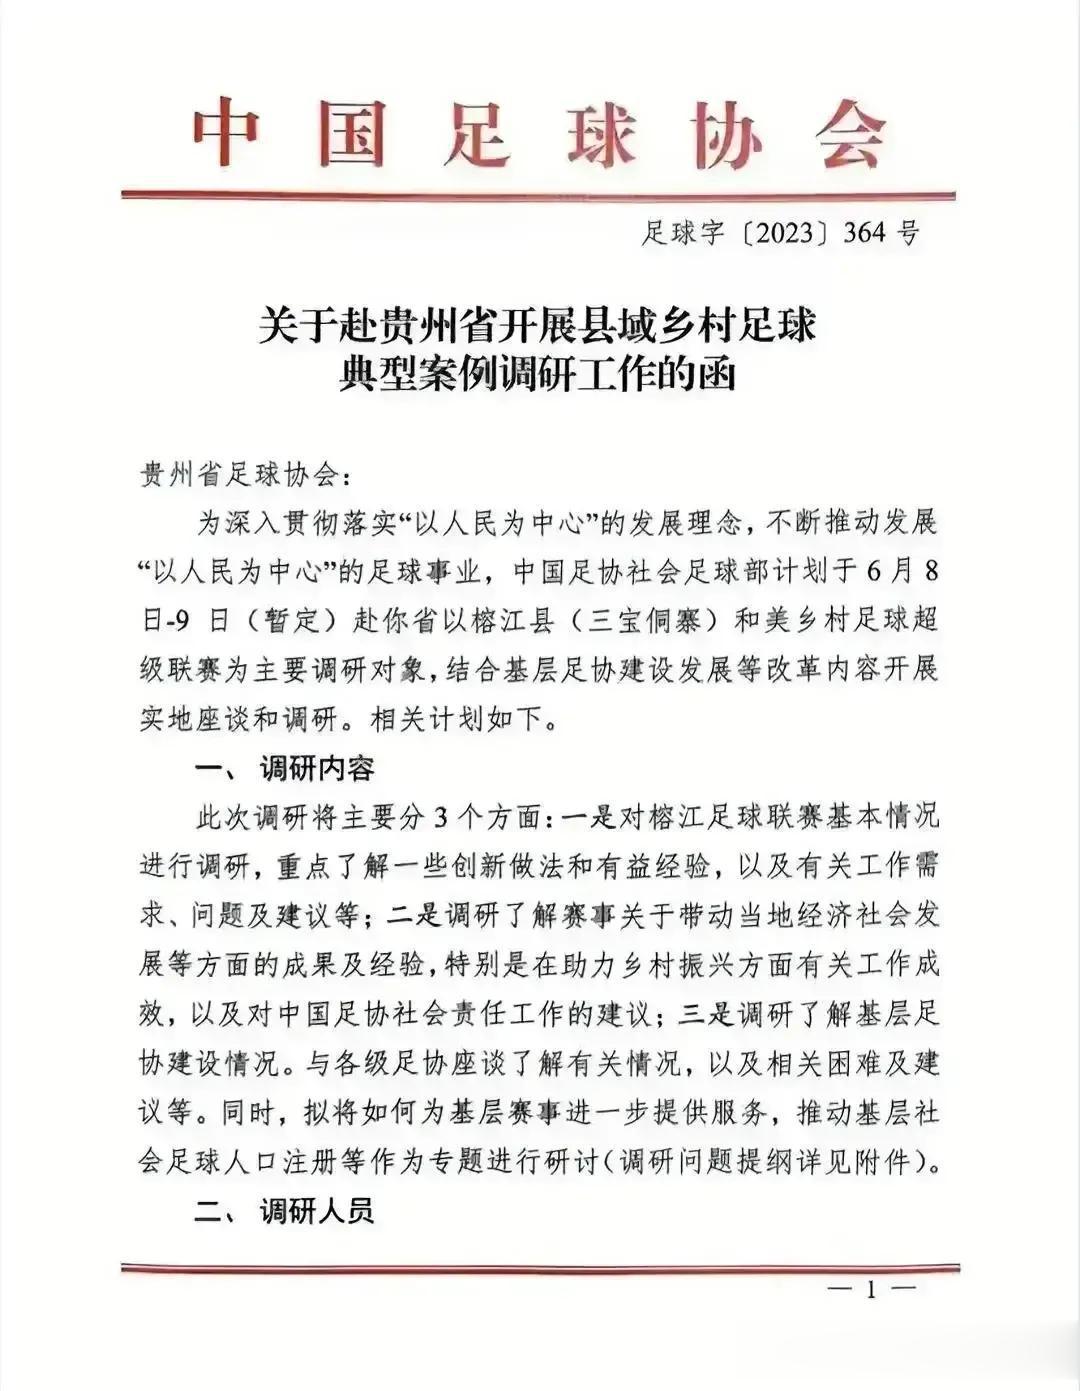 足协理应是个民间体育组织，可在中国，妥妥的一个官僚机构，连下去调查都要发个红头文(1)